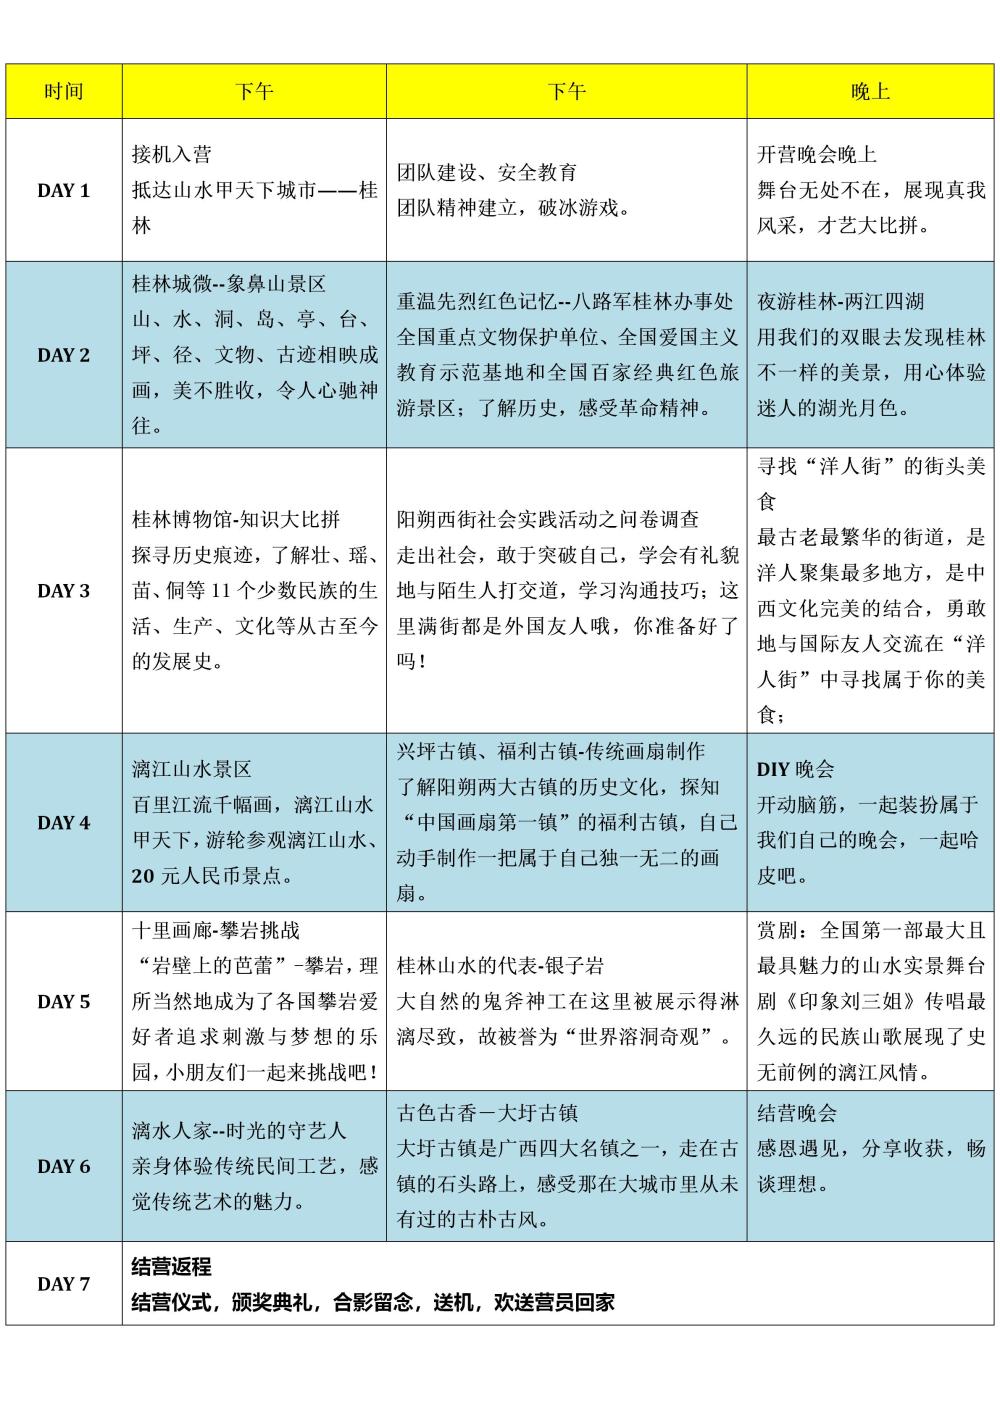 2019桂林研学行程表 - （简化）_01.jpg